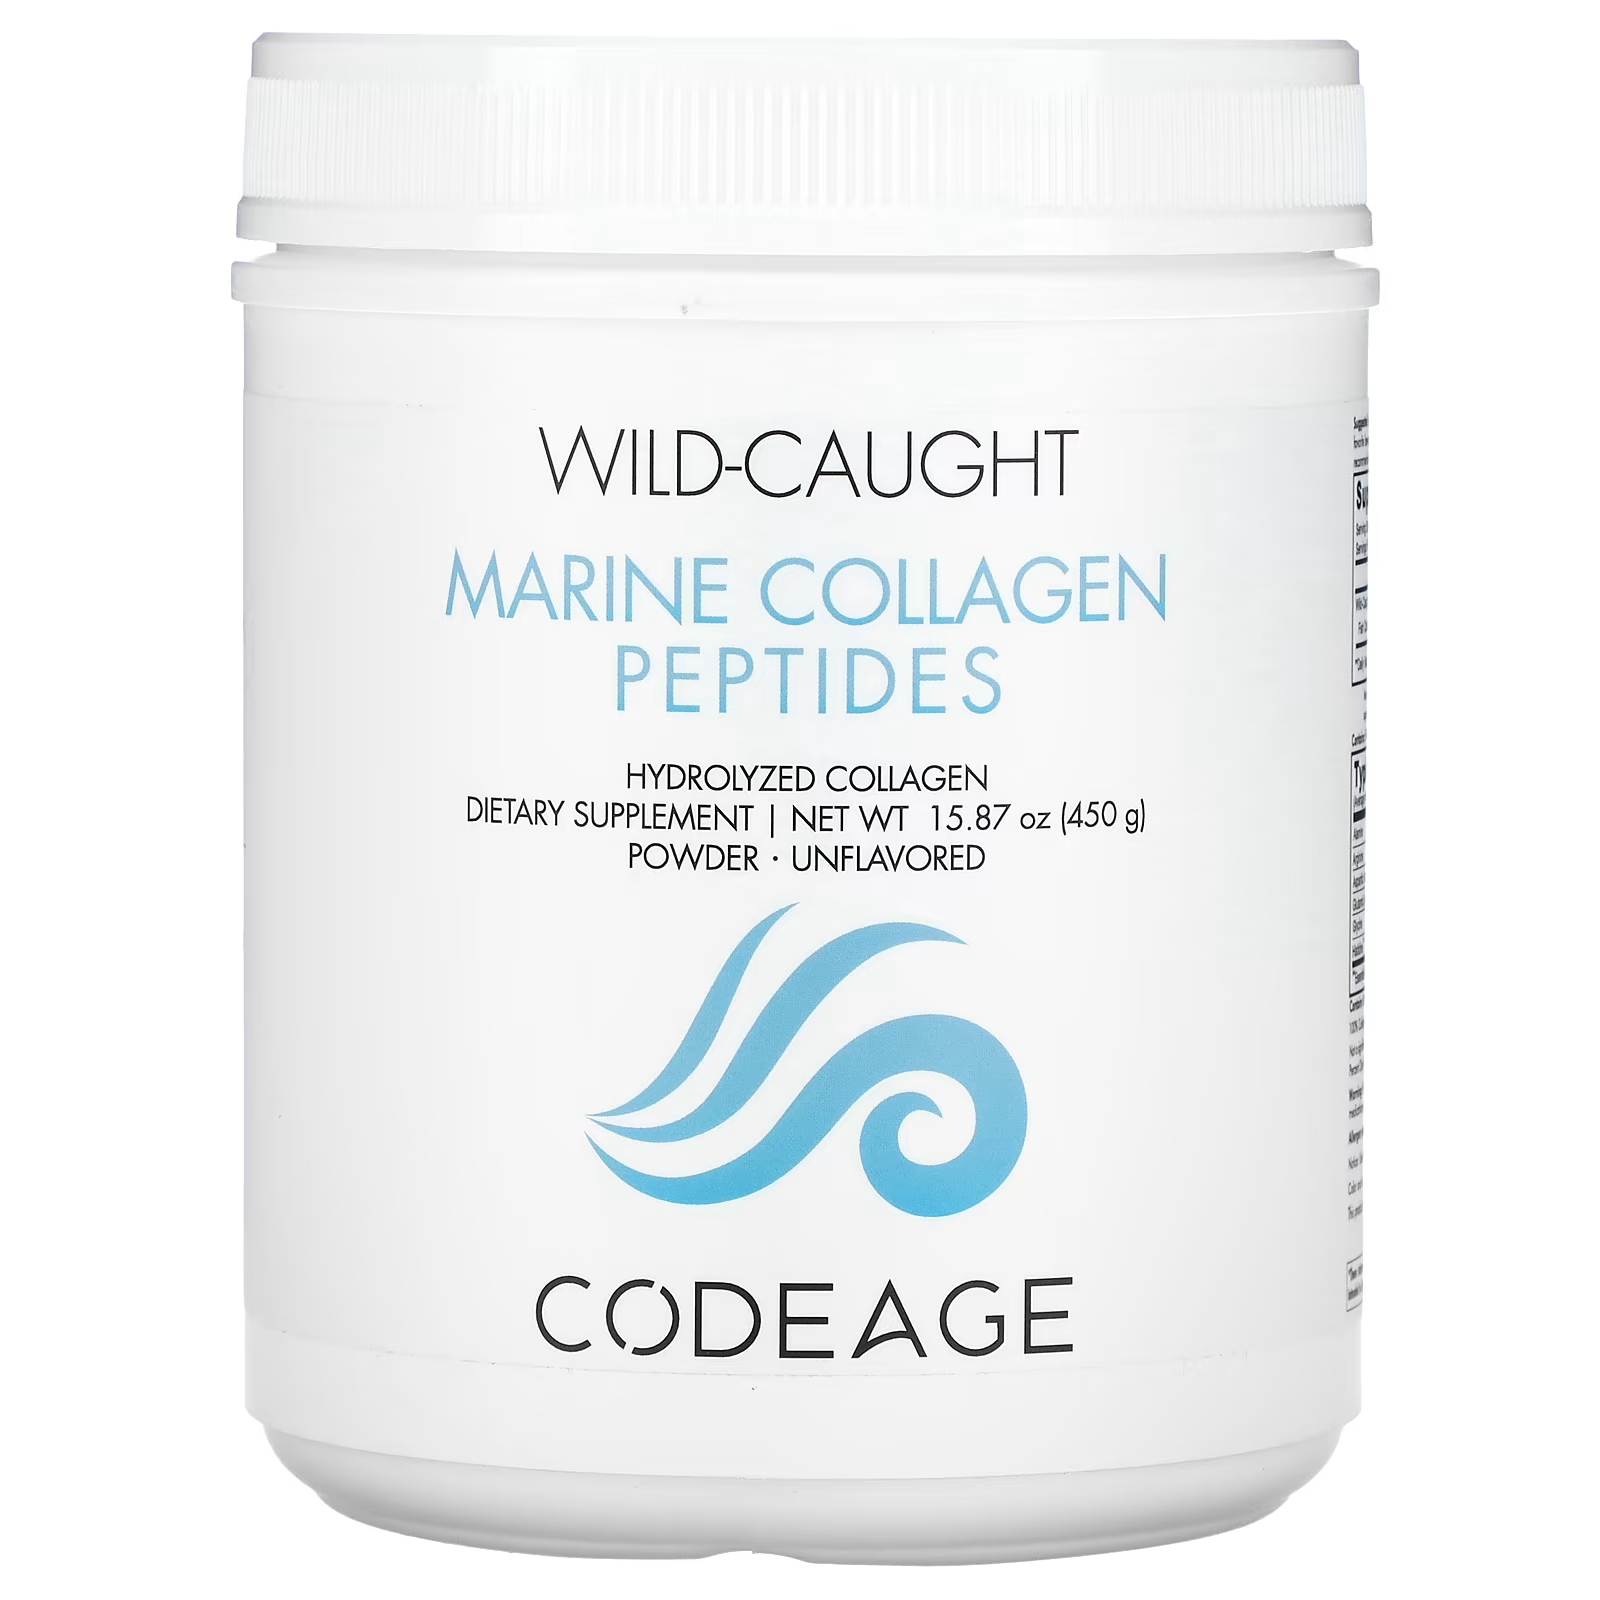 Codeage Wild-Caught Marine Collagen Peptides Порошок гидролизованного коллагена без вкуса, 15,87 унции (450 г) codeage platinum порошок из нескольких пептидов коллагена без добавок 326 г 11 50 унции